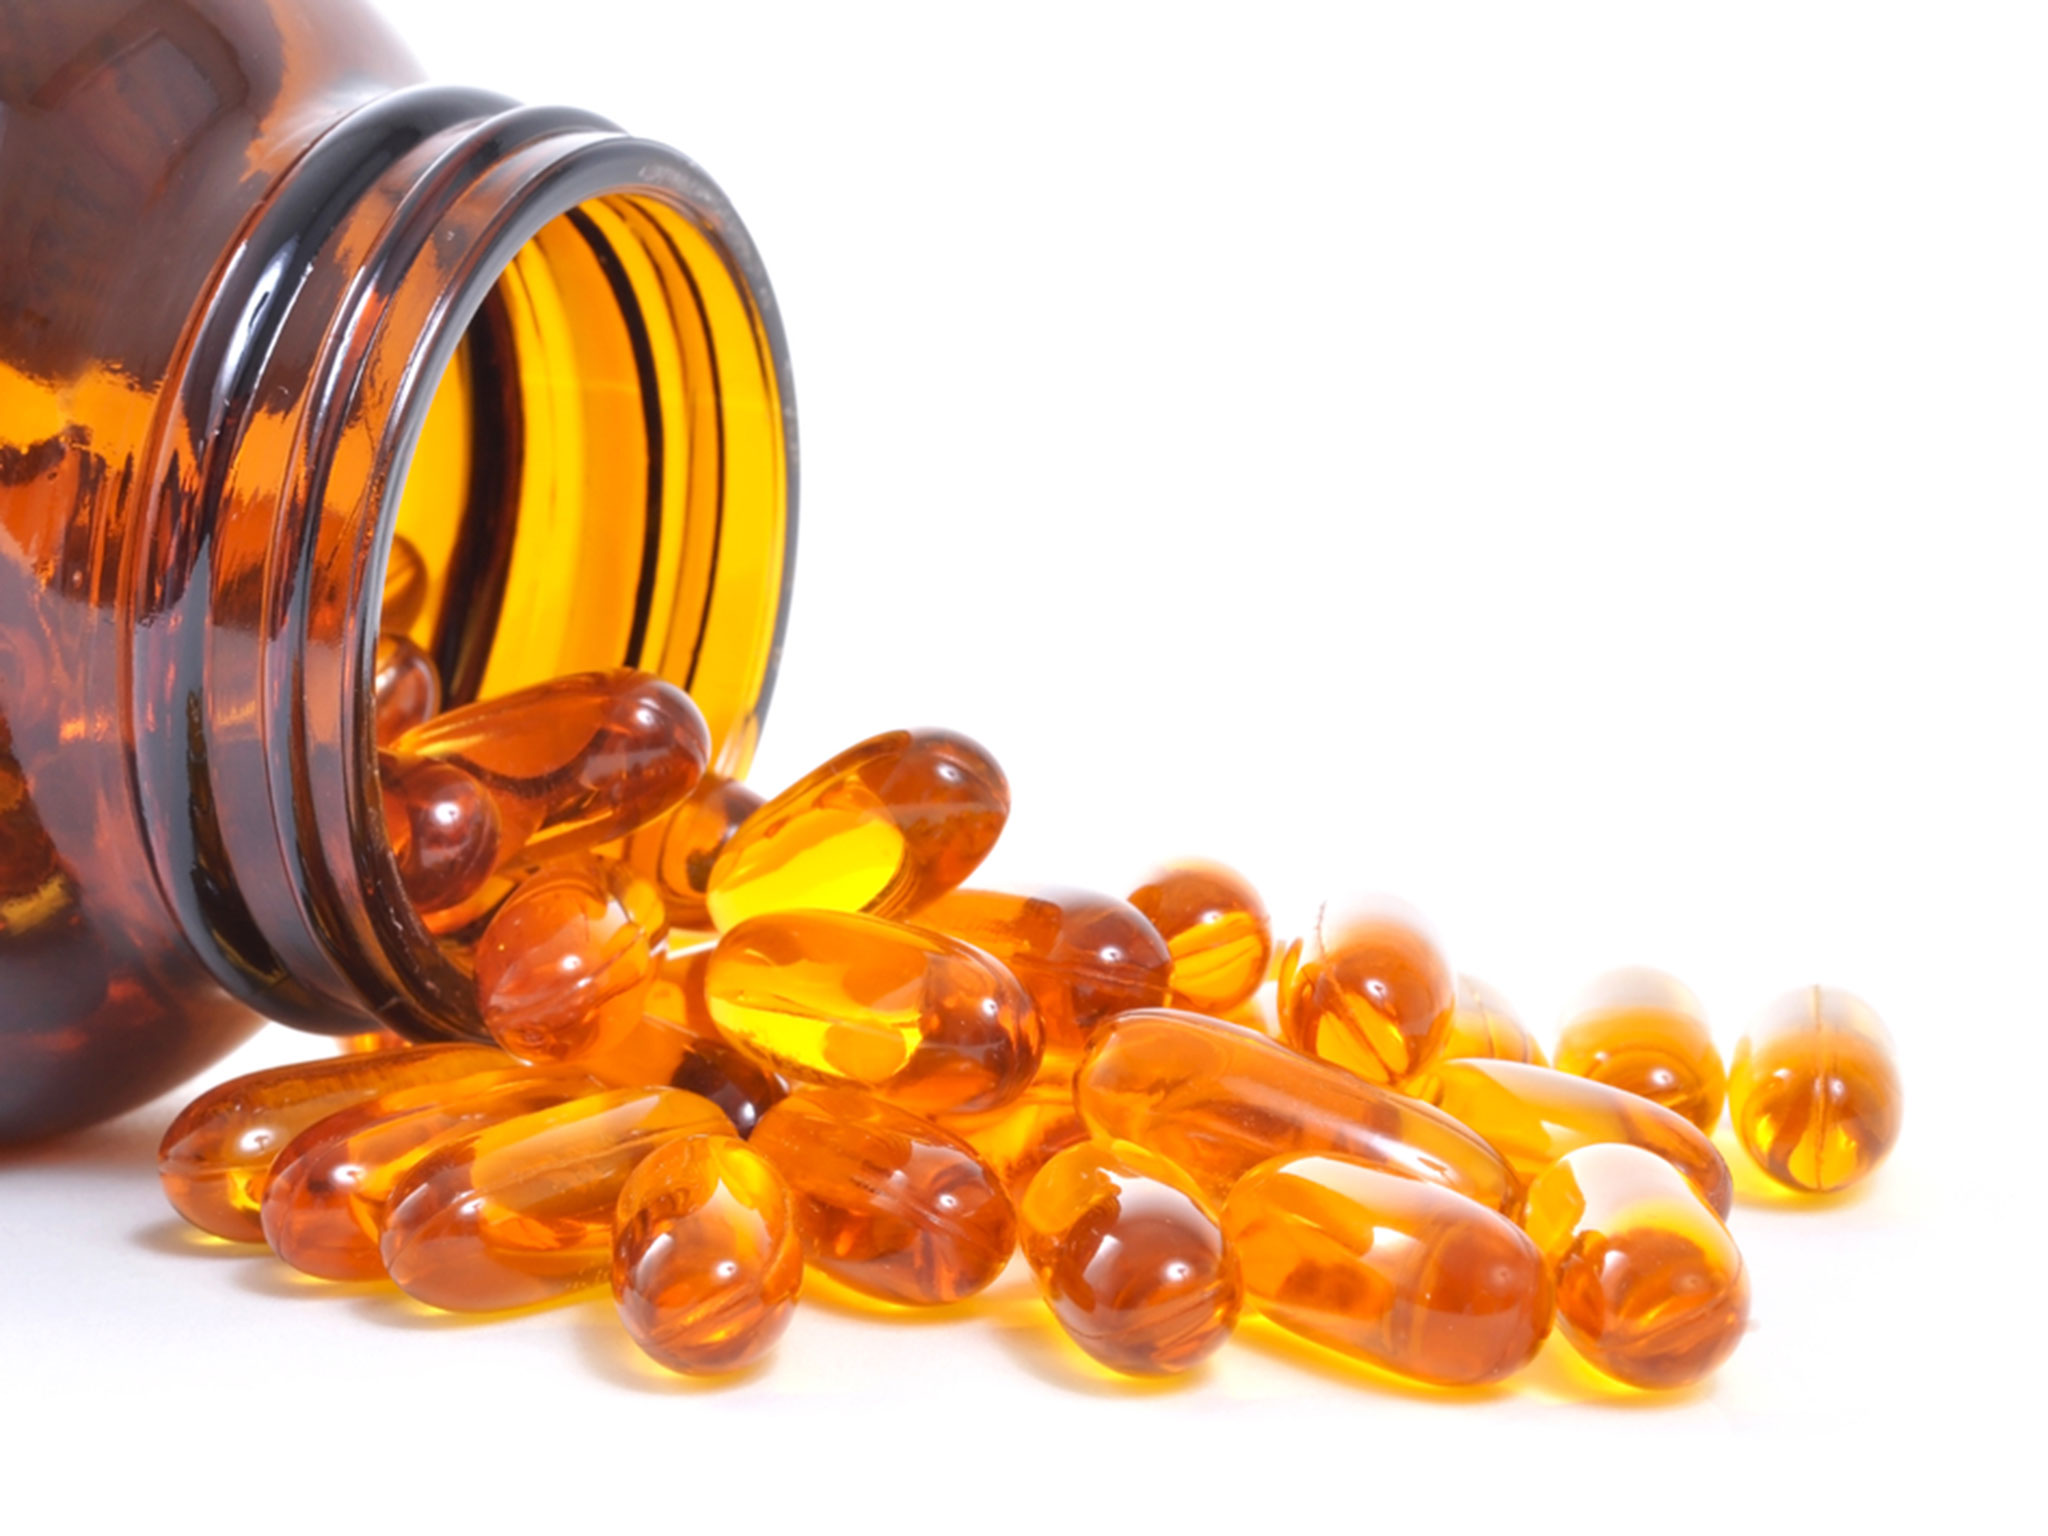 Vitamin D3 supplements